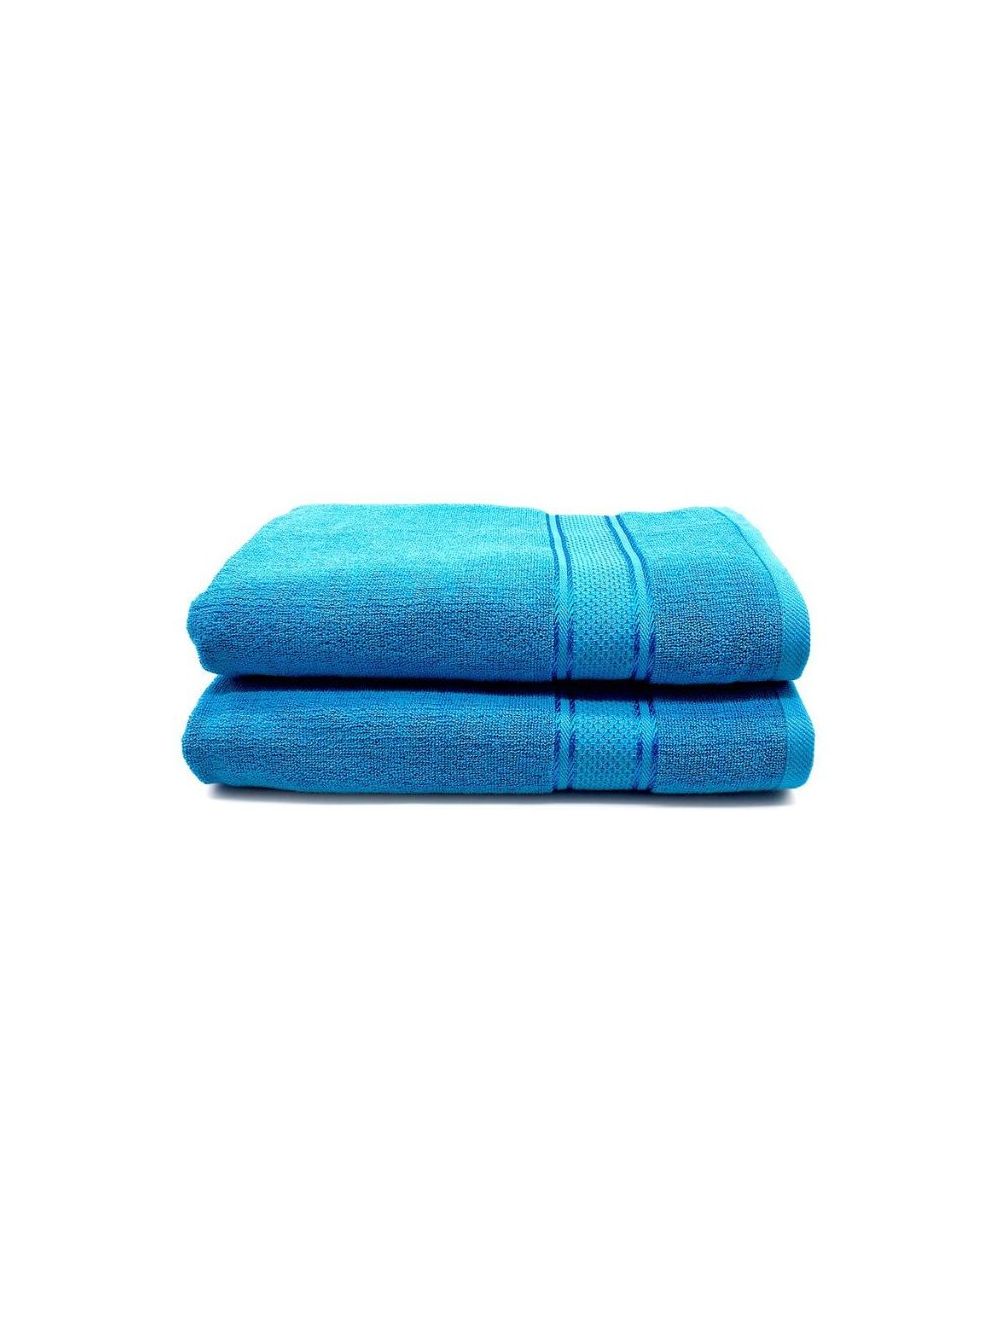 Rishahome 100% Cotton 2-Piece Bath Towel Set 70x140 cm, Premium Collection, Blue-14RHFT056